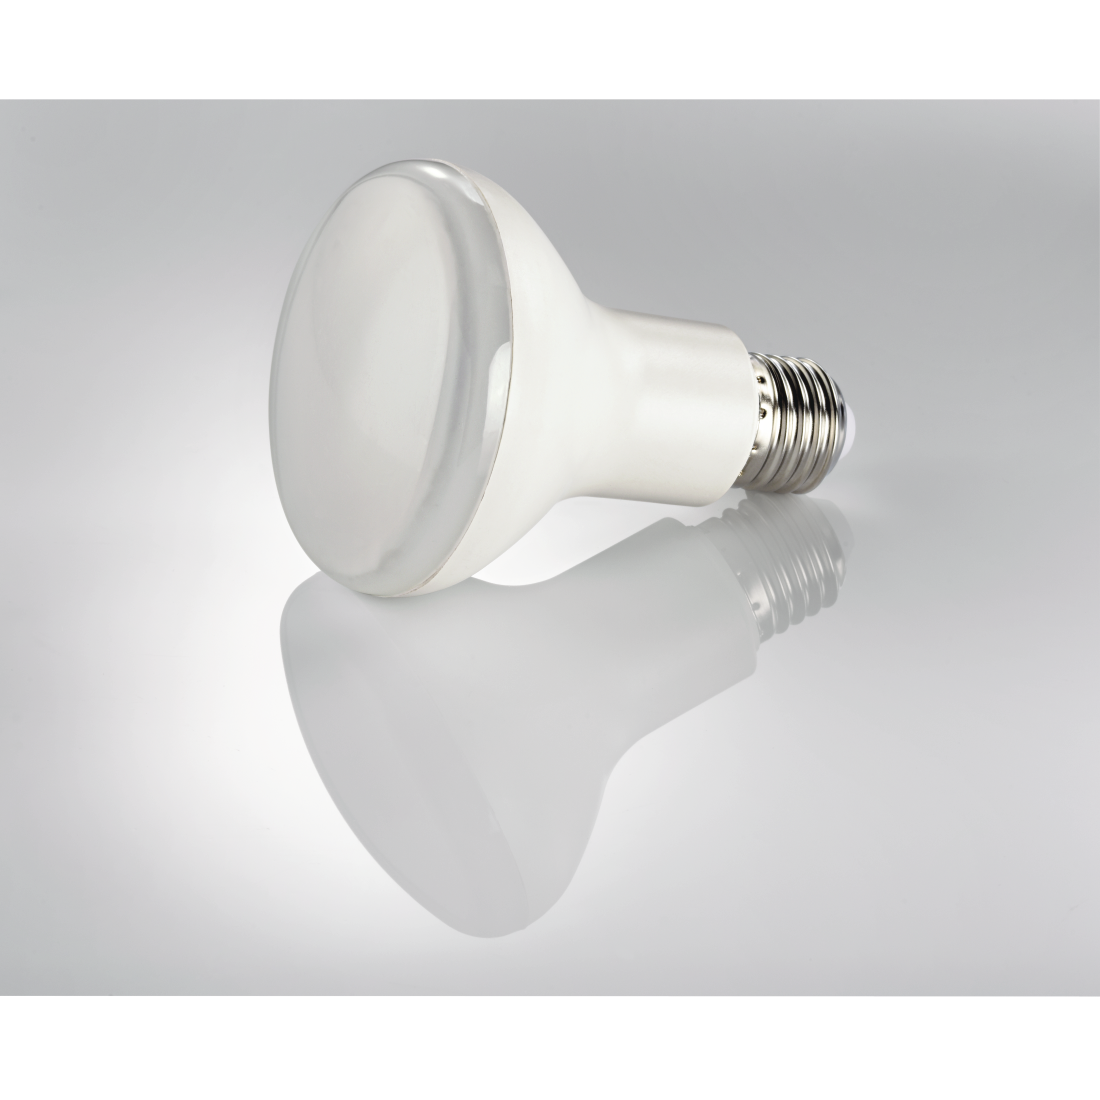 abx3 High-Res Image 3 - Xavax, Ampoule LED, E27, 1050lm rempl. 75W, ampoule à réfl. R80, blanc chaud